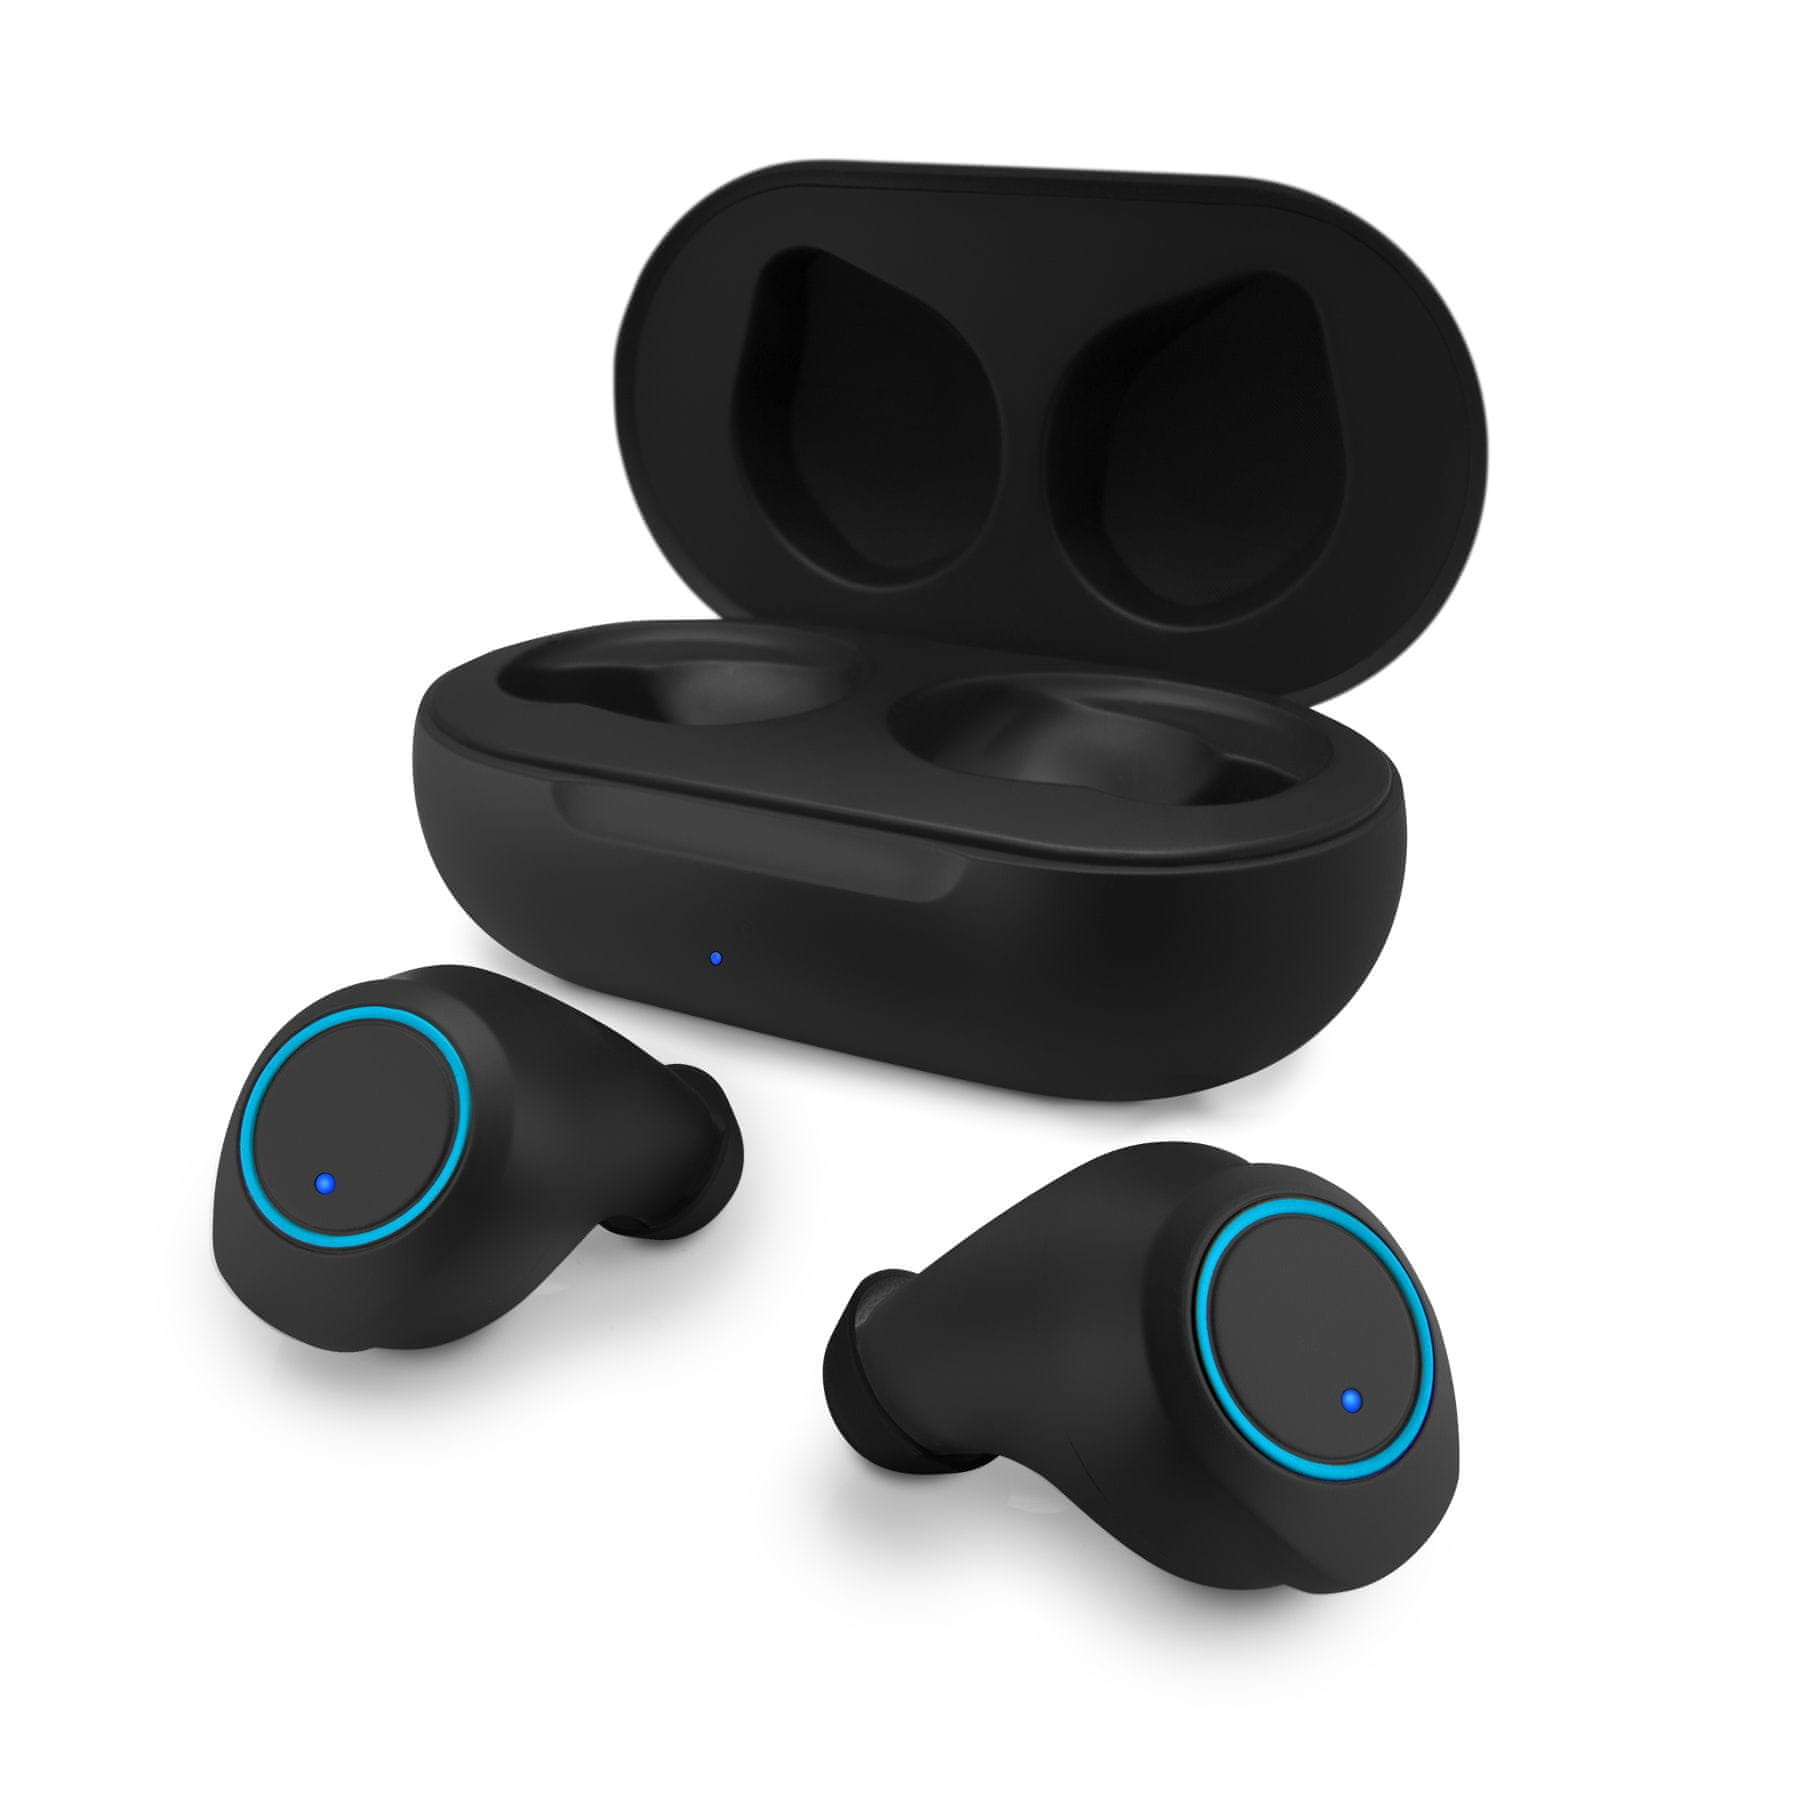  kellemes fülbe helyezhető fülhallgató niceboy hive drops 3 bluetooth vezeték nélküli technológia aac kodek handsfree funkció töltőtok víz- és izzadságálló alkalmazással vezérelhető hangszínszabályozás 